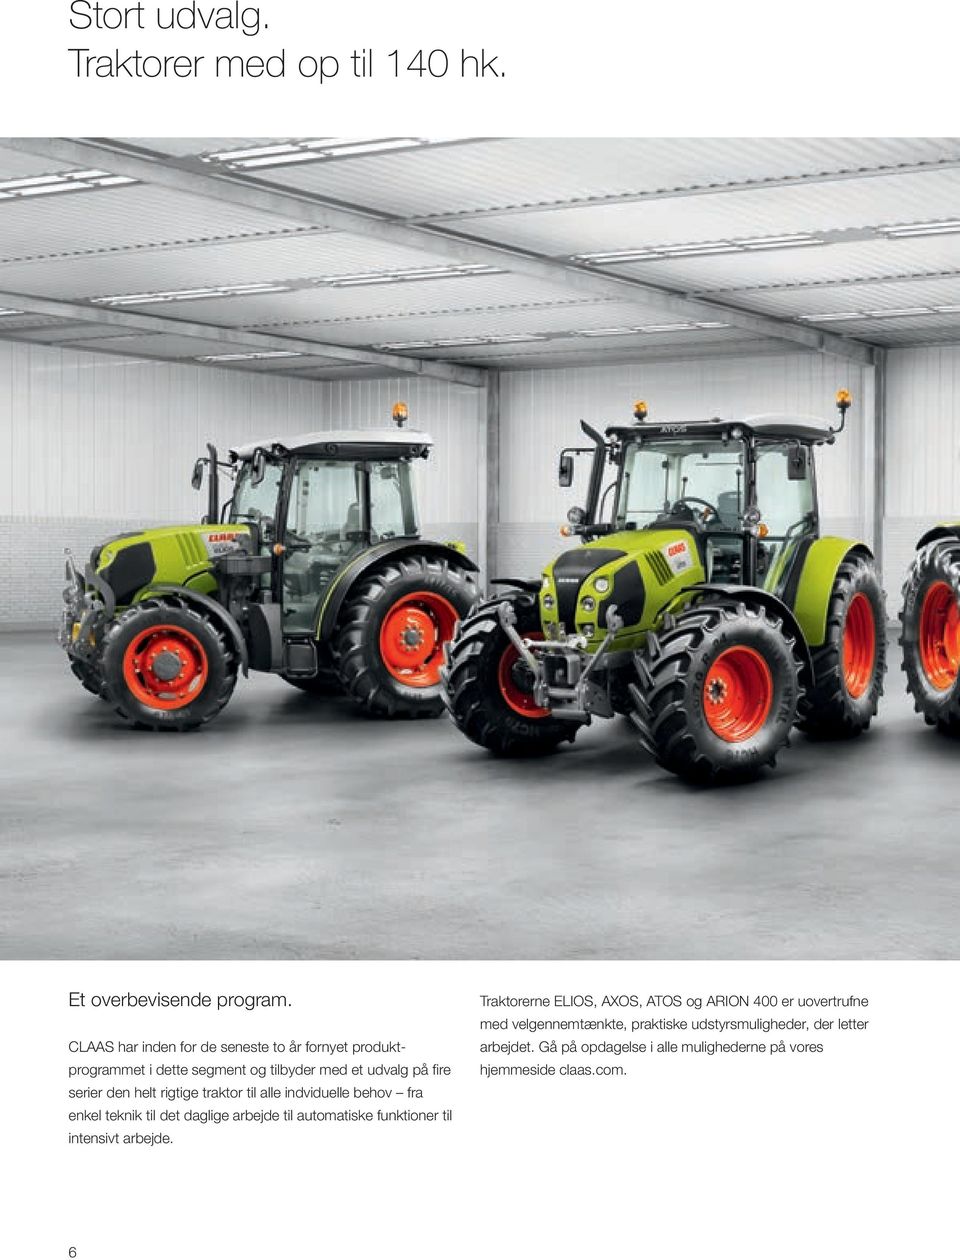 rigtige traktor til alle indviduelle behov fra enkel teknik til det daglige arbejde til automatiske funktioner til intensivt arbejde.